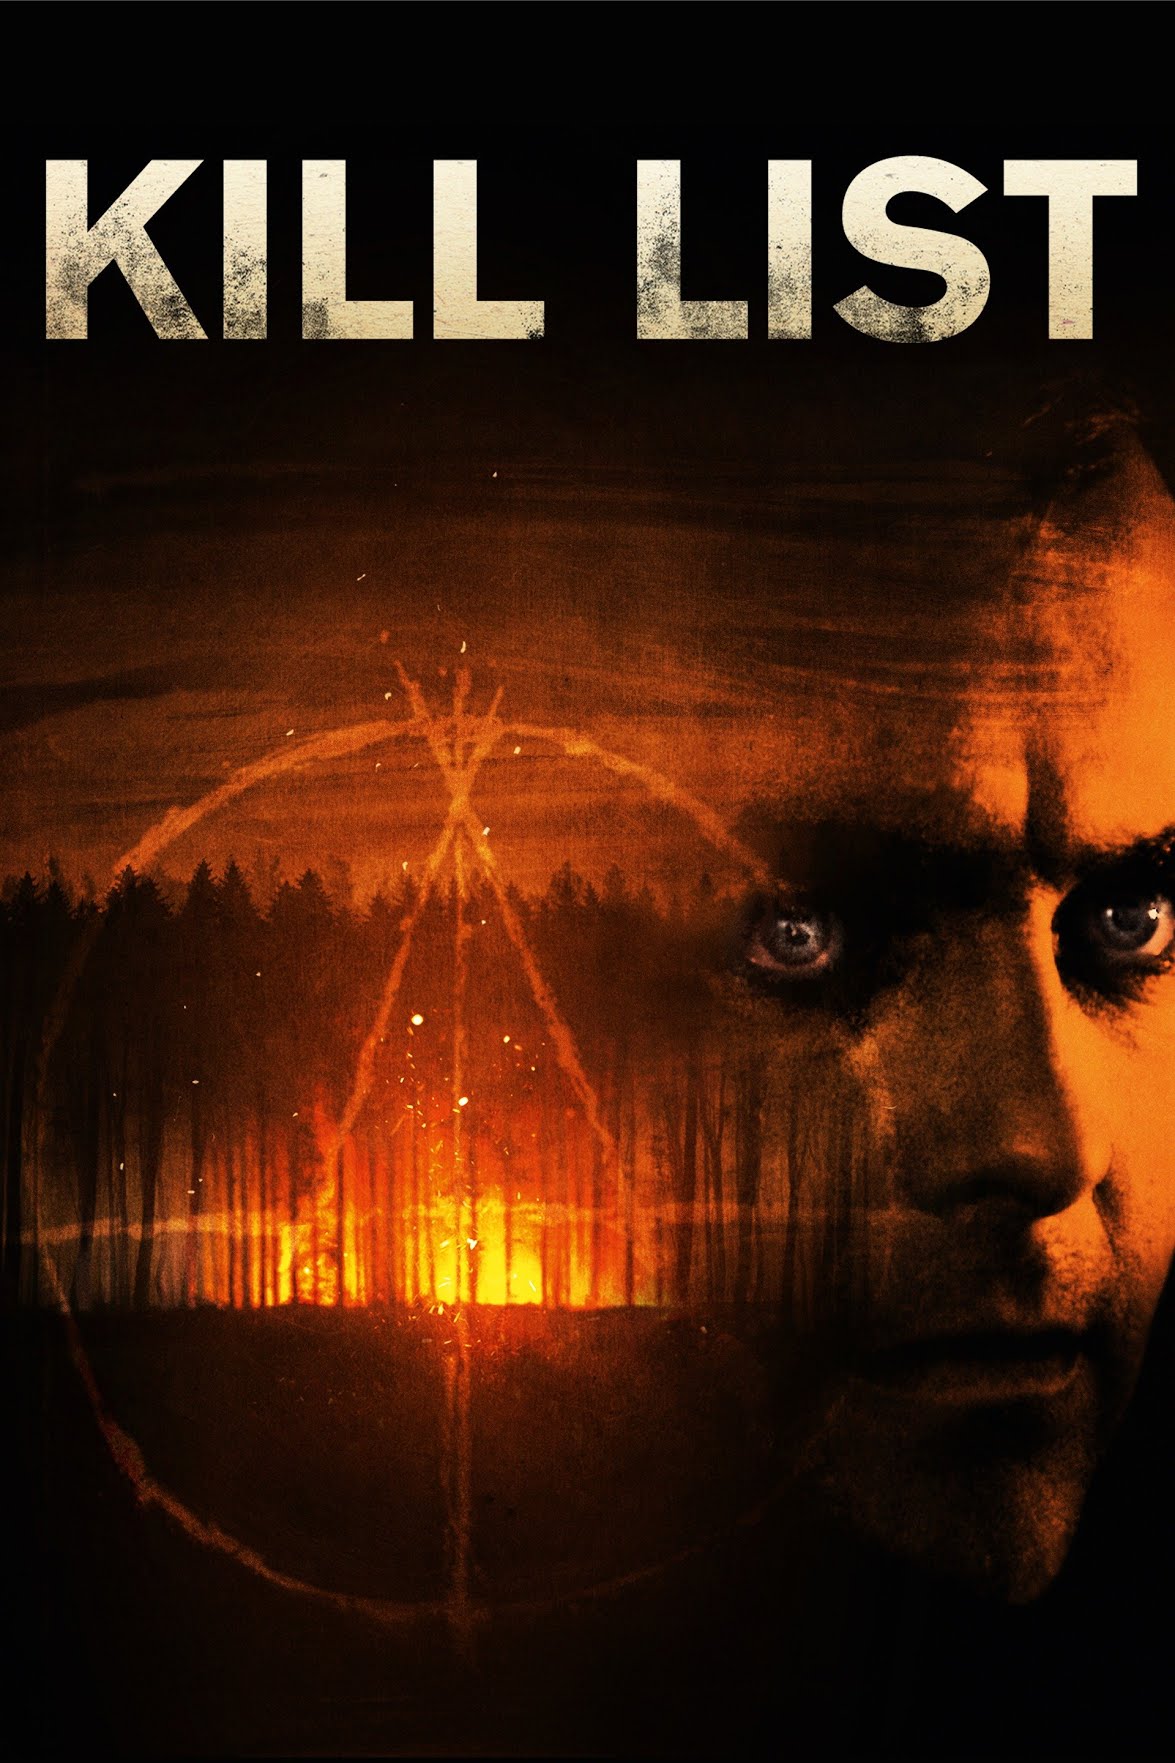 Kill List [HD] (2011)